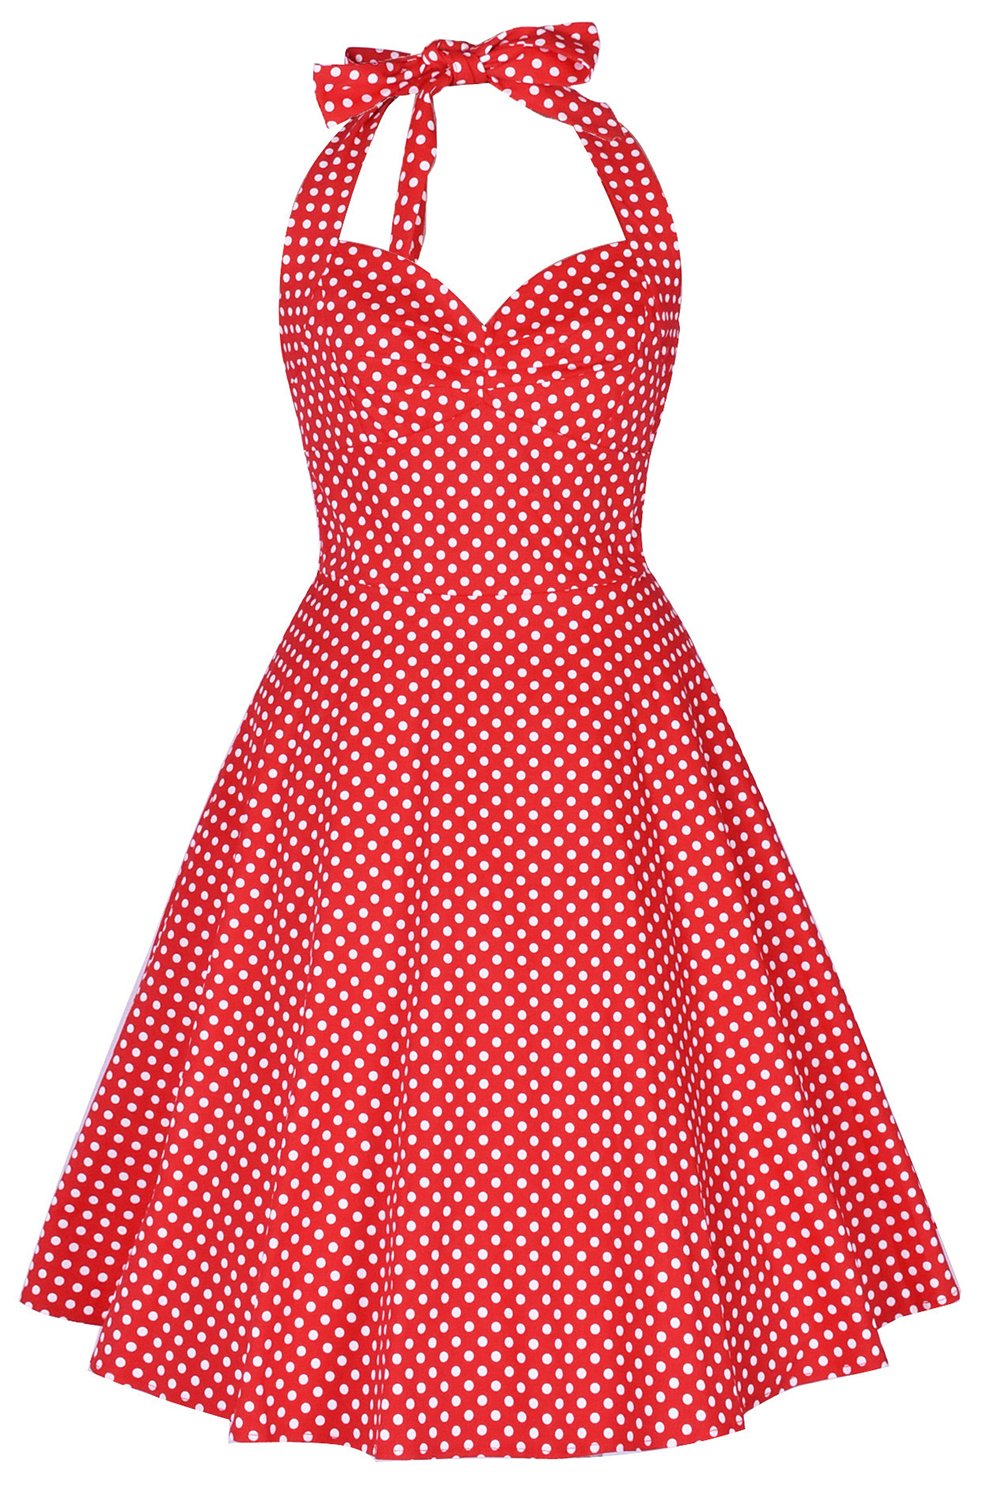 Halter Printed 1950s Pin Up Dress